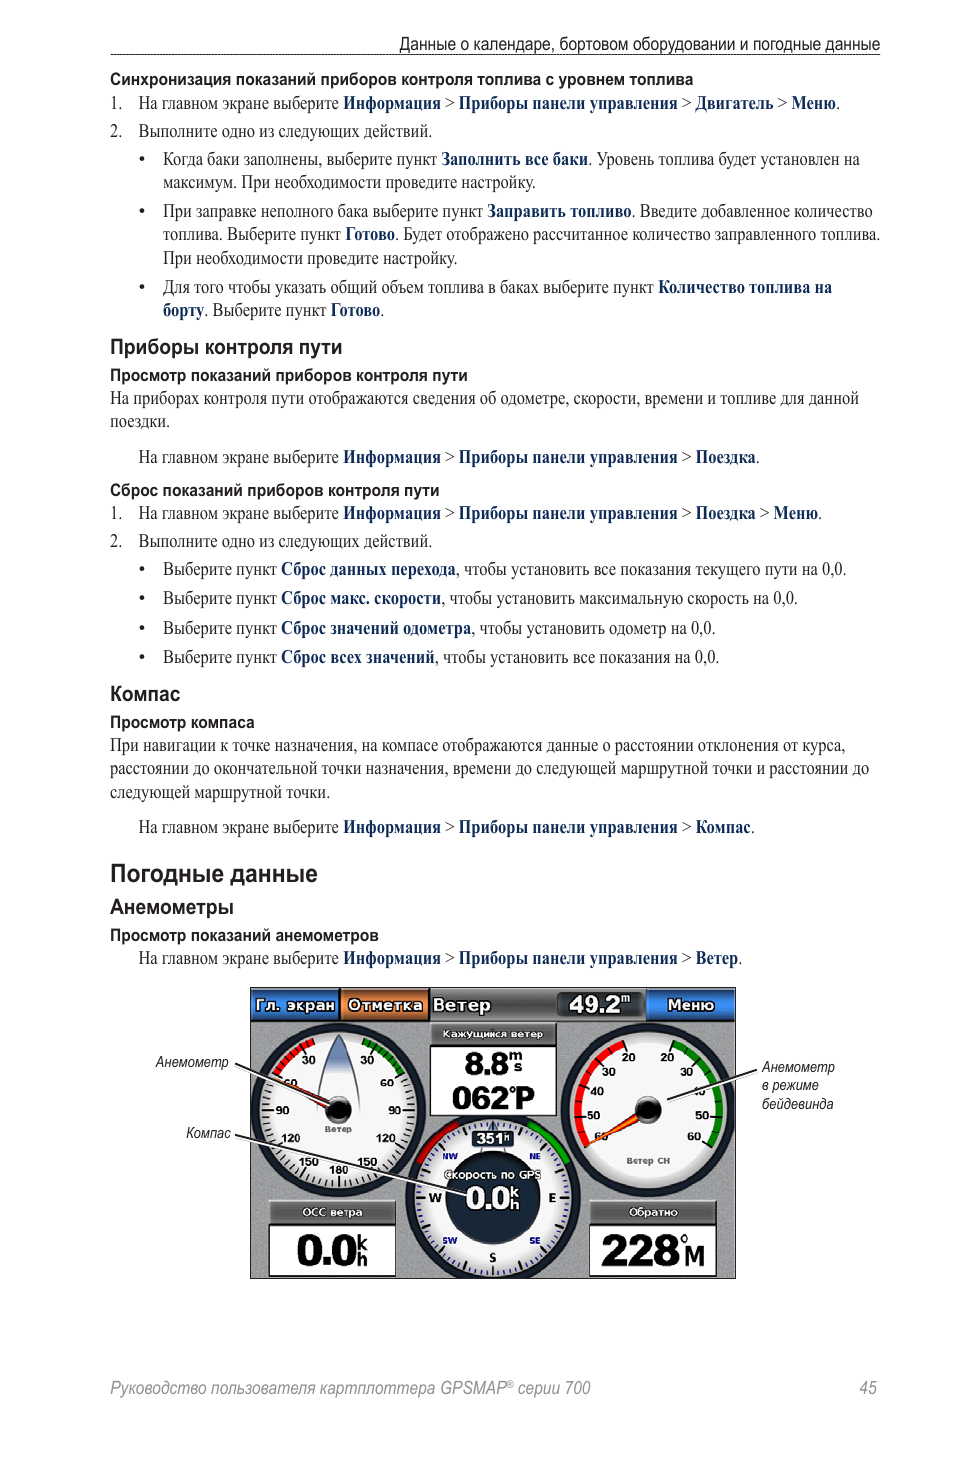 Погодные данные | Инструкция по эксплуатации Garmin GPSMAP 740s | Страница 49 / 104